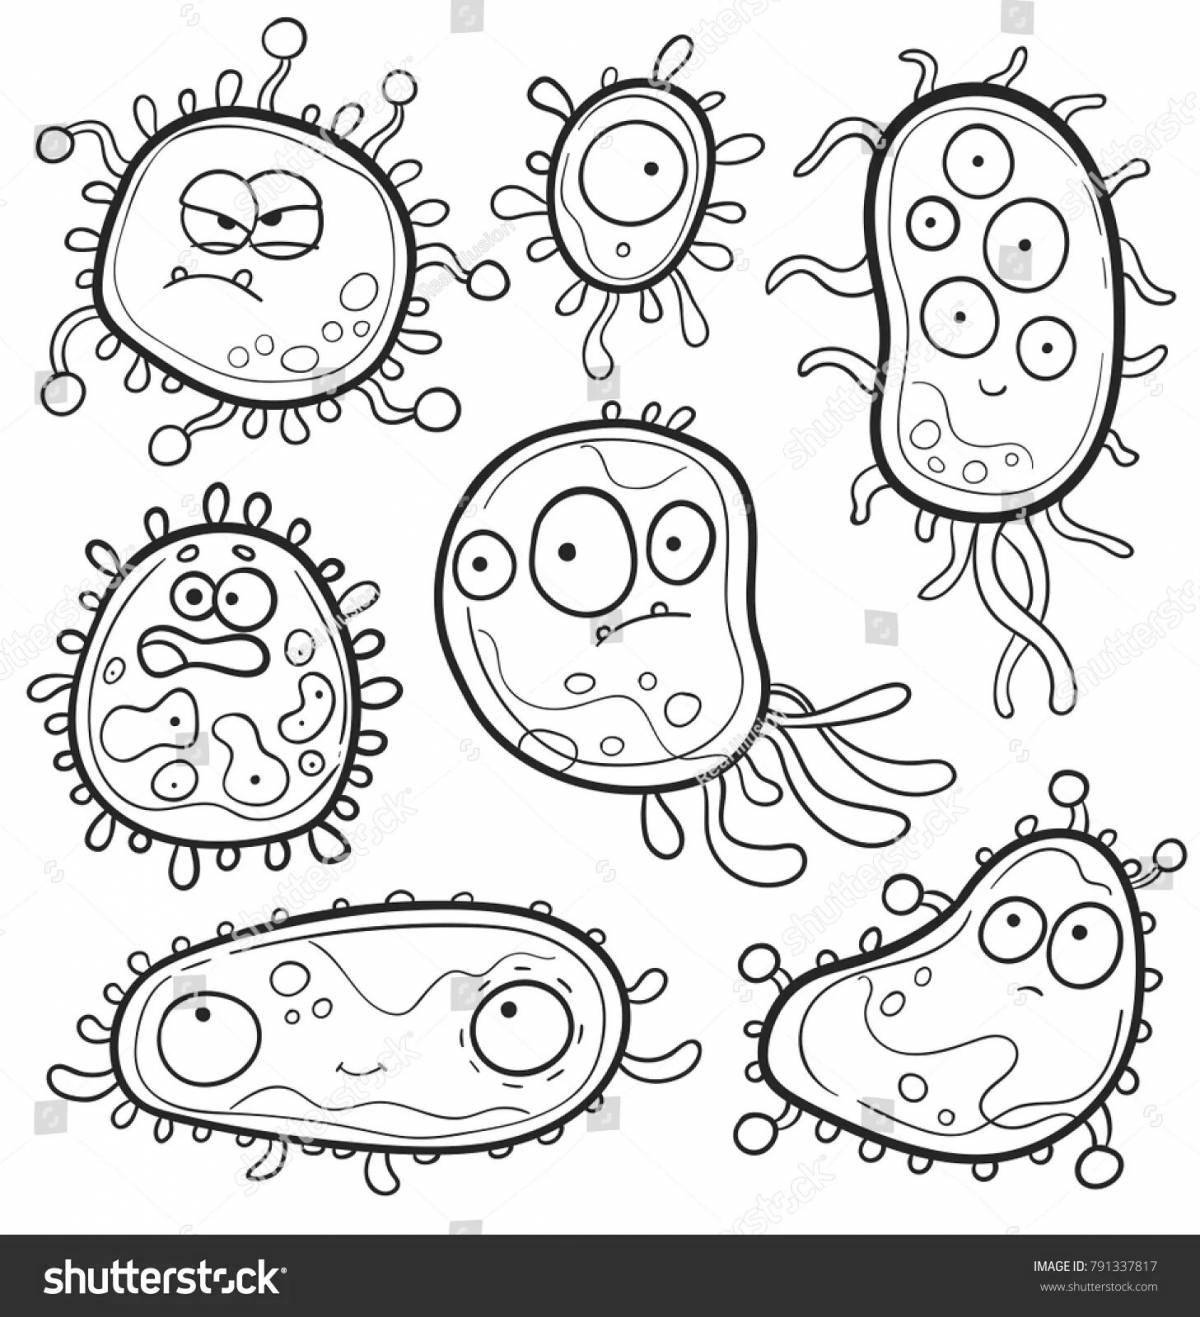 Очаровательные микробы и бактерии раскраска